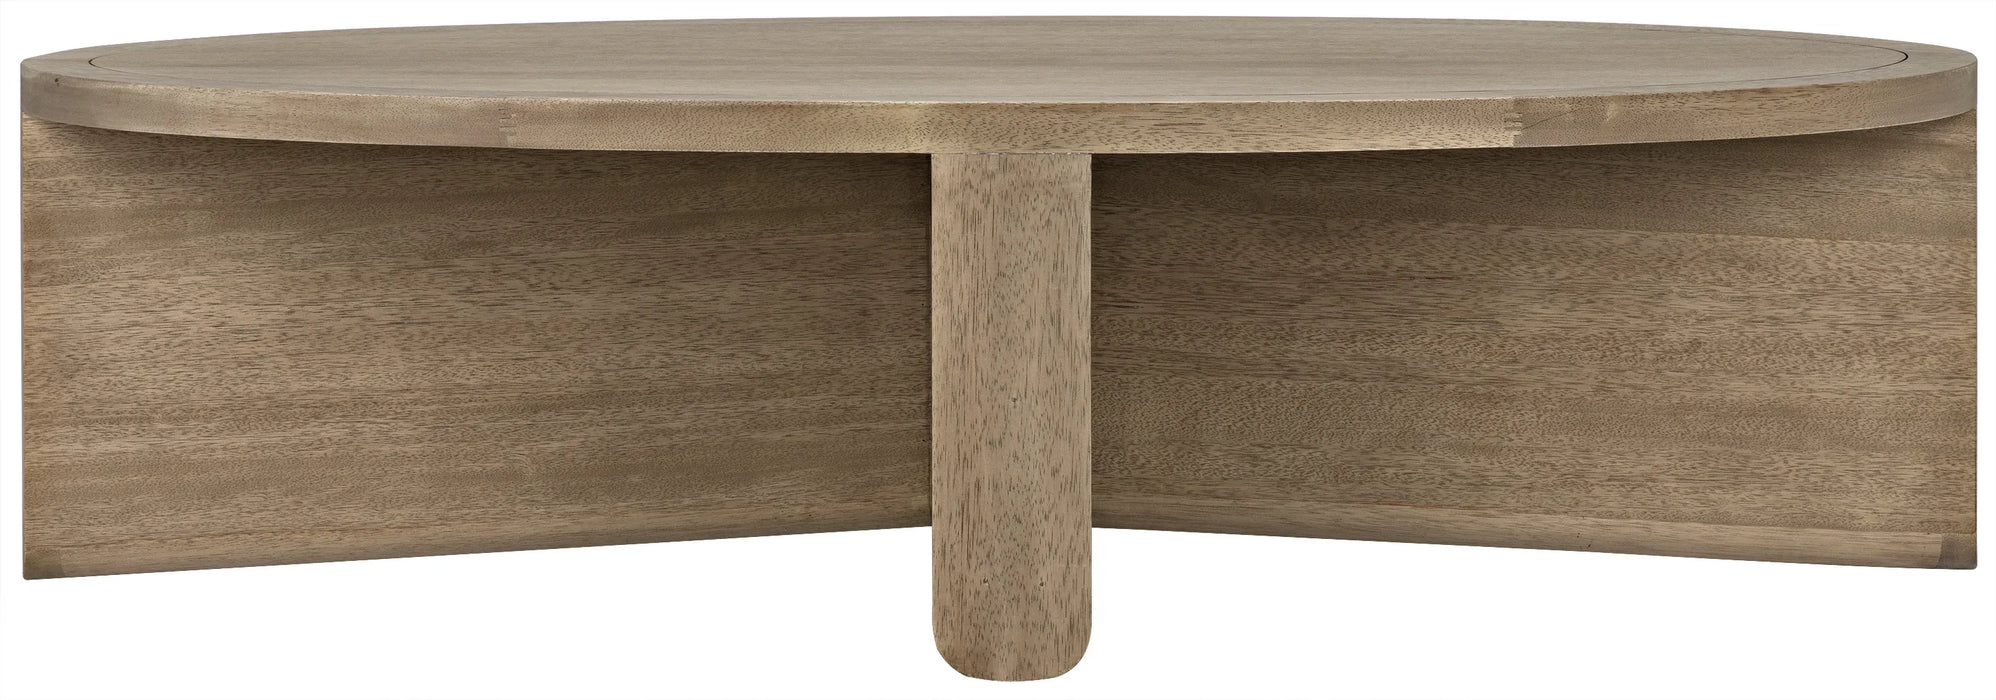 NOIR Furniture - Bast Coffee Table, Washed Walnut - GTAB1056WAW